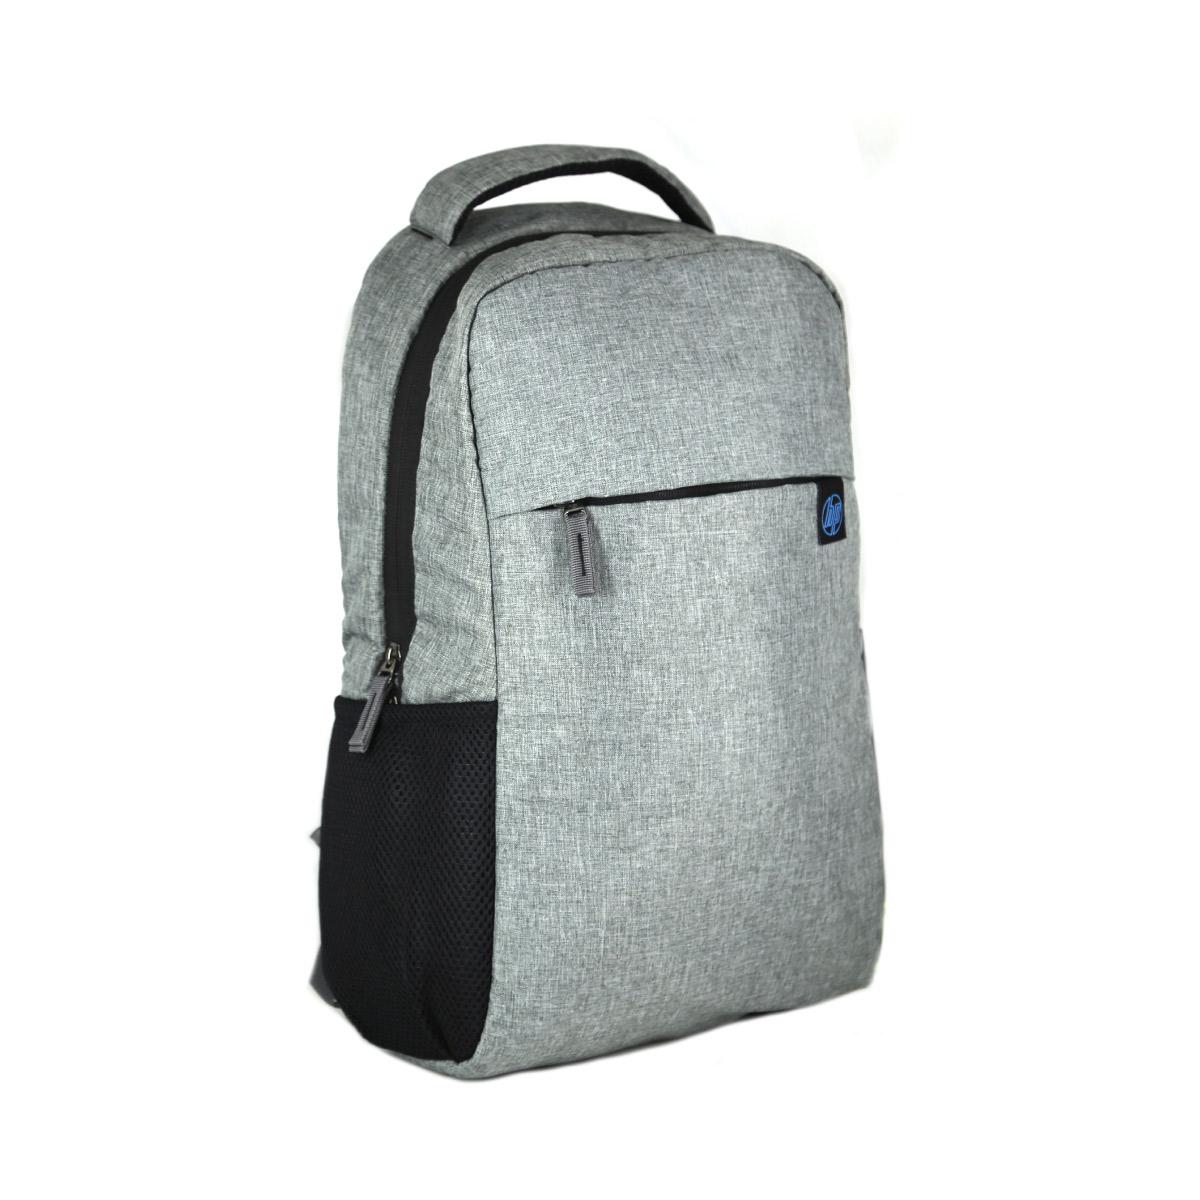 Croma CRXL5206 20 L Laptop Backpack Black - Price in India | Flipkart.com